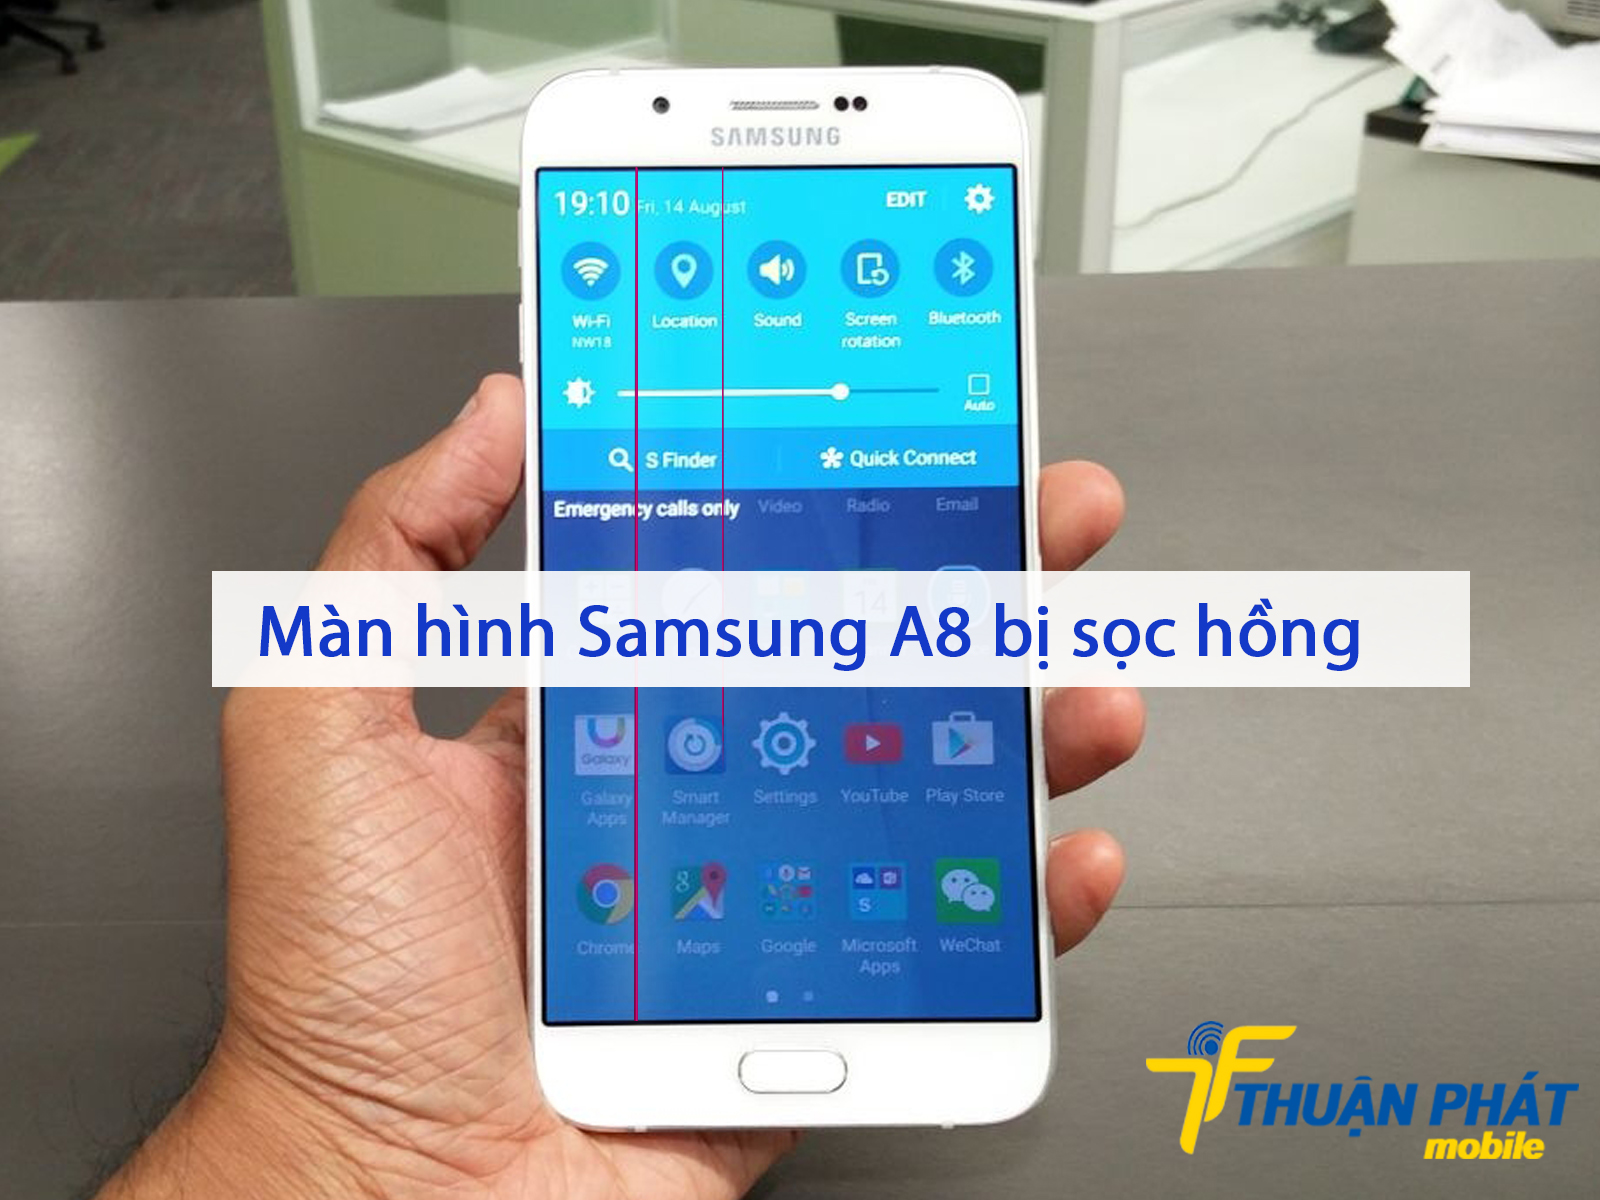 Màn hình Samsung A8 bị sọc hồng